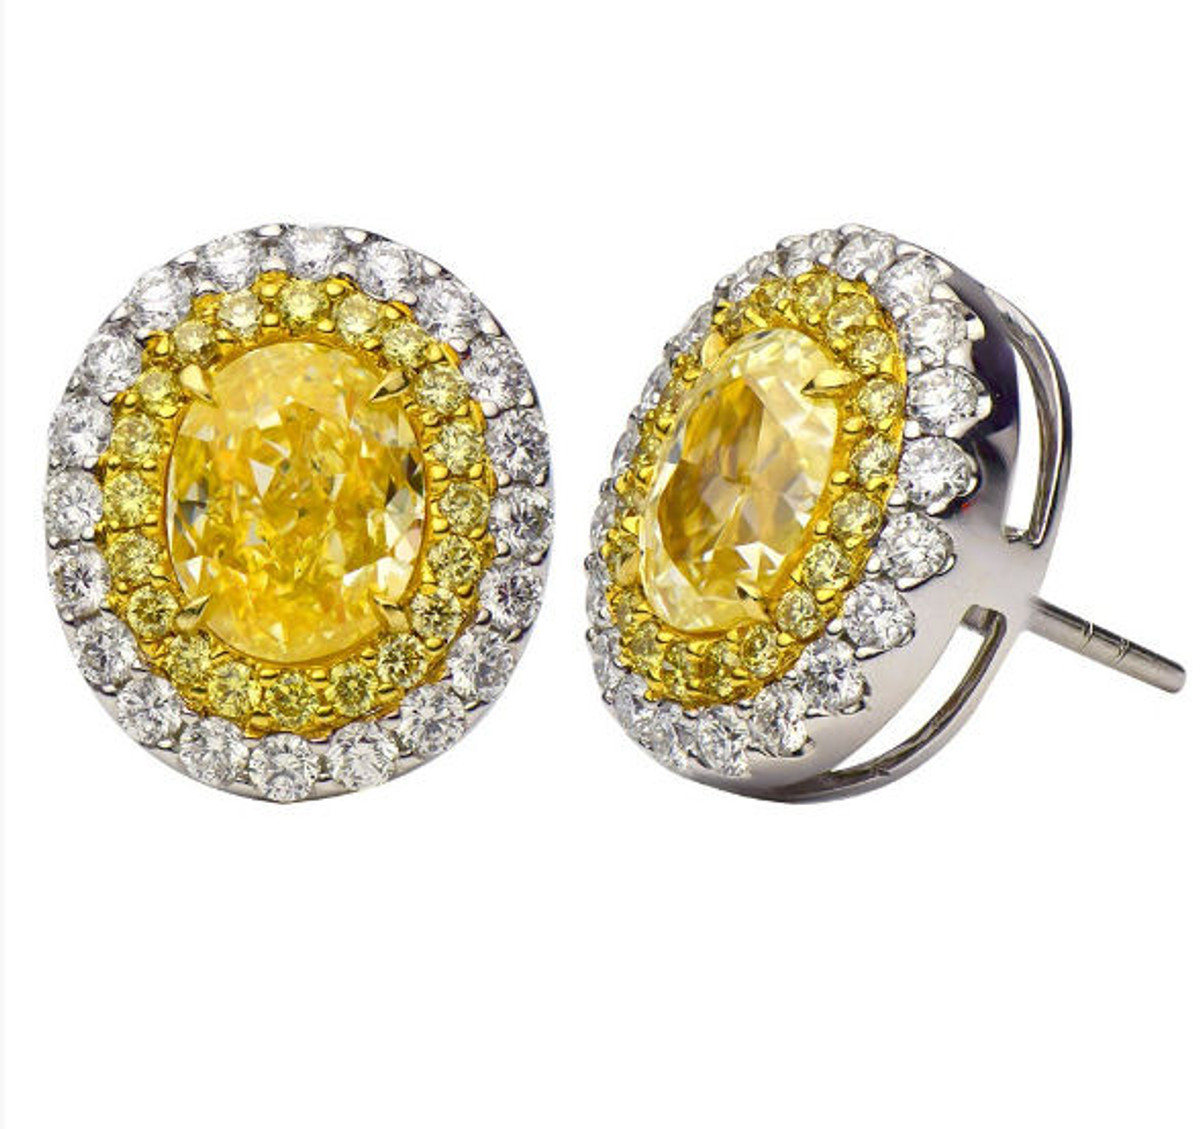 Fancy Yellow Oval Halo Diamond Earrings